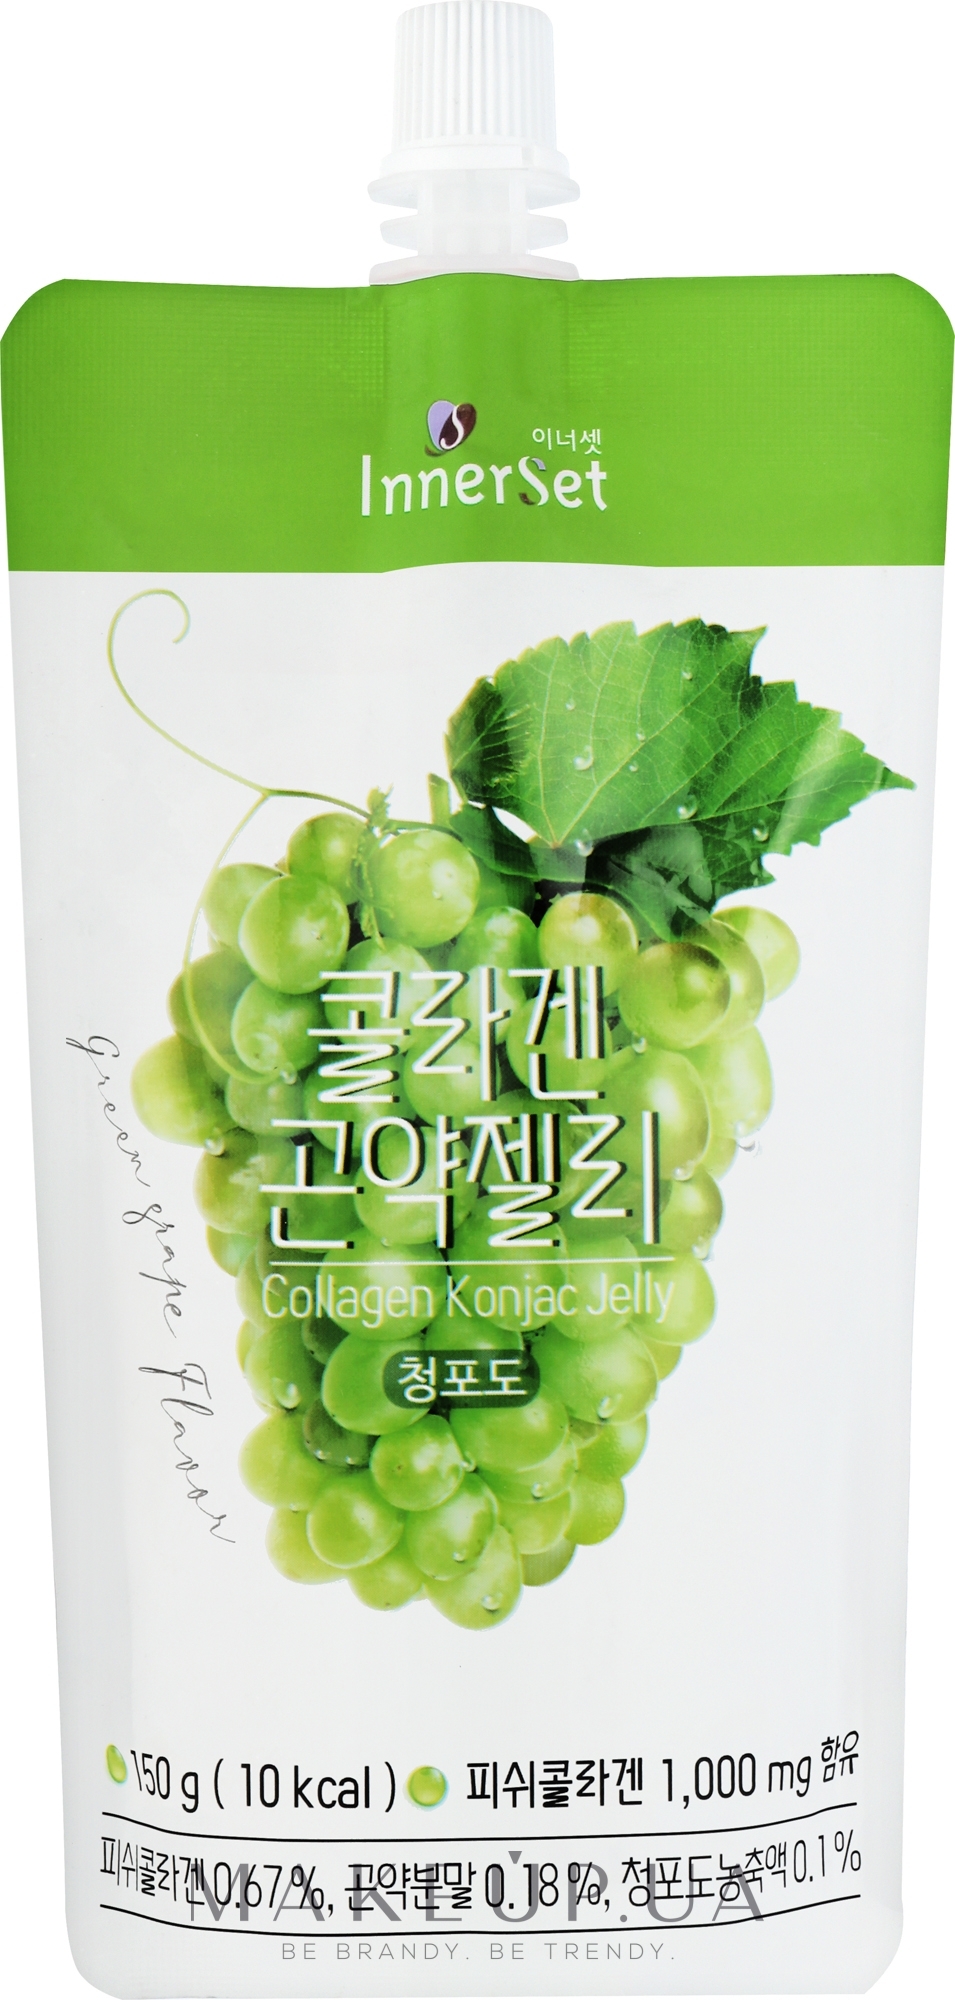 Їстівне колагенове желе з екстрактом винограду - Innerset Collagen Konjac Jelly — фото 150g